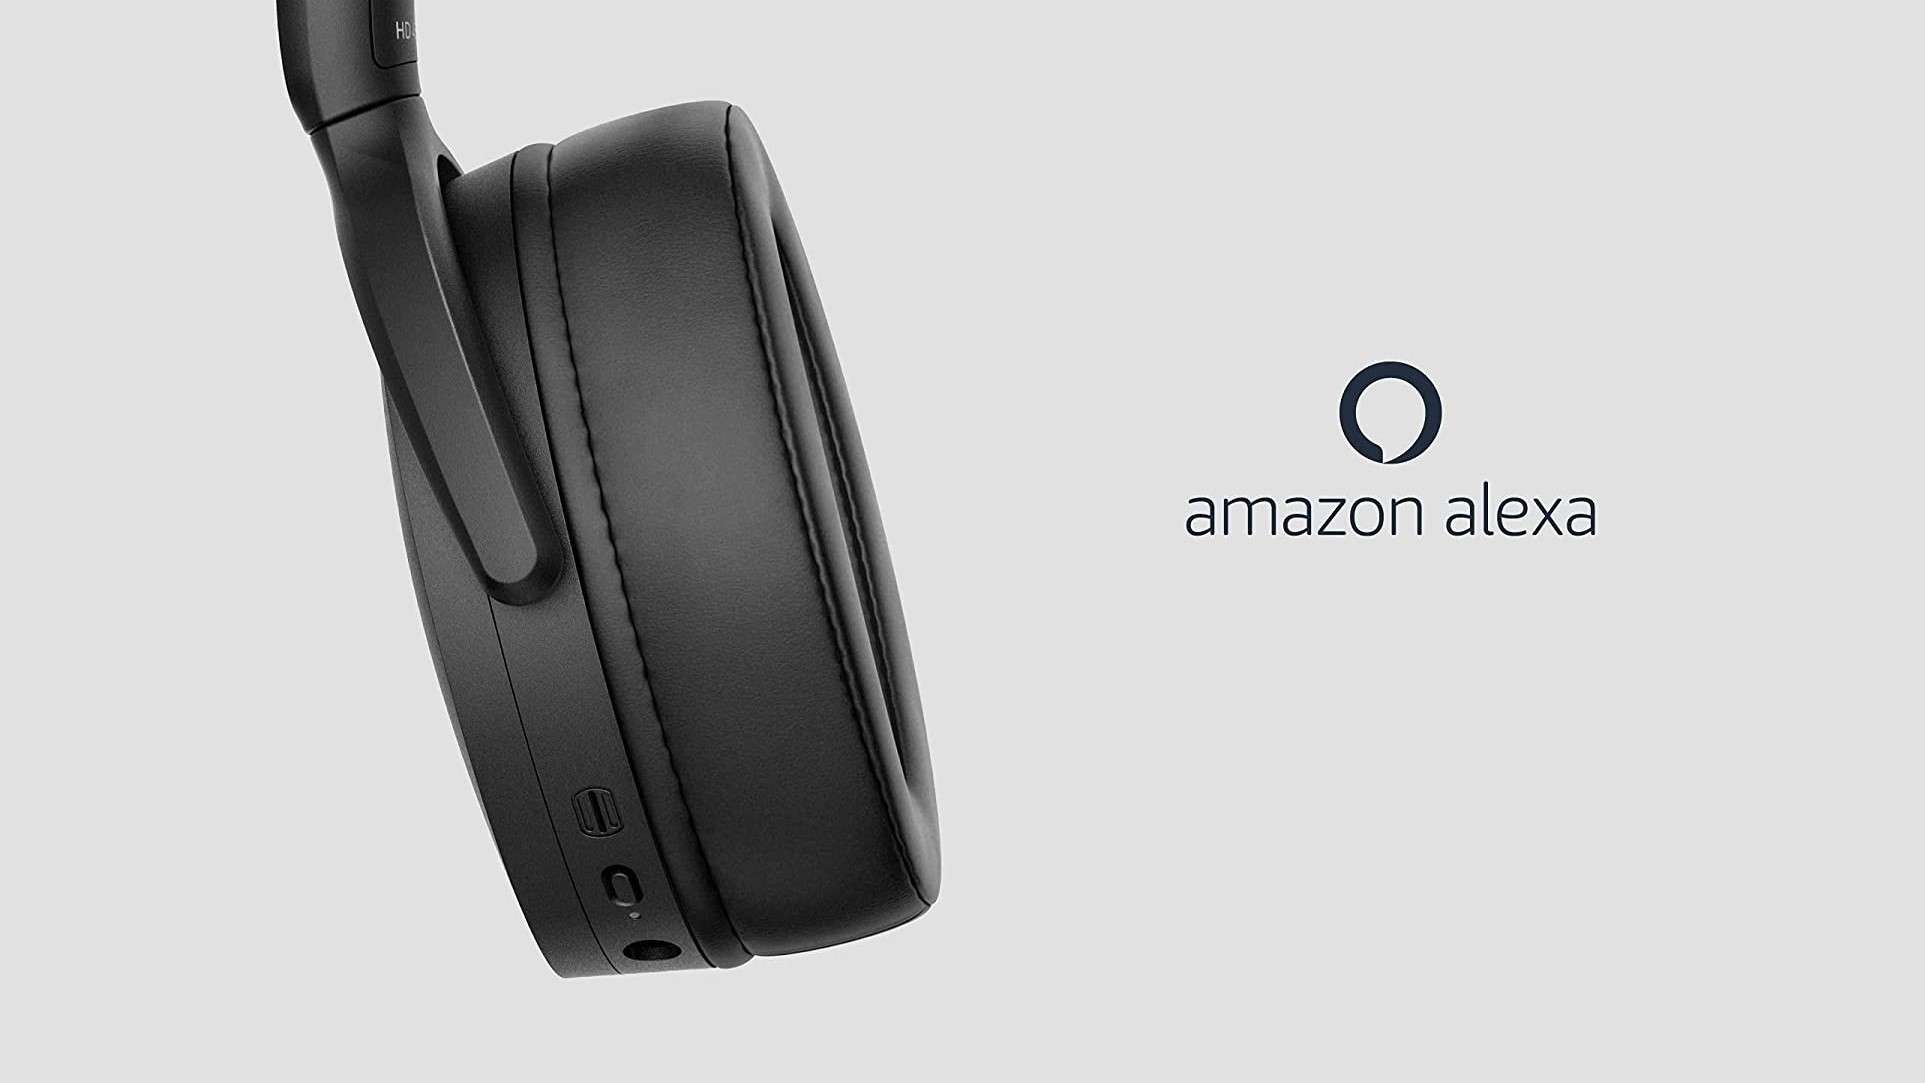 Cuffie Sennheiser wireless con Alexa: metà prezzo FOLLE su Amazon